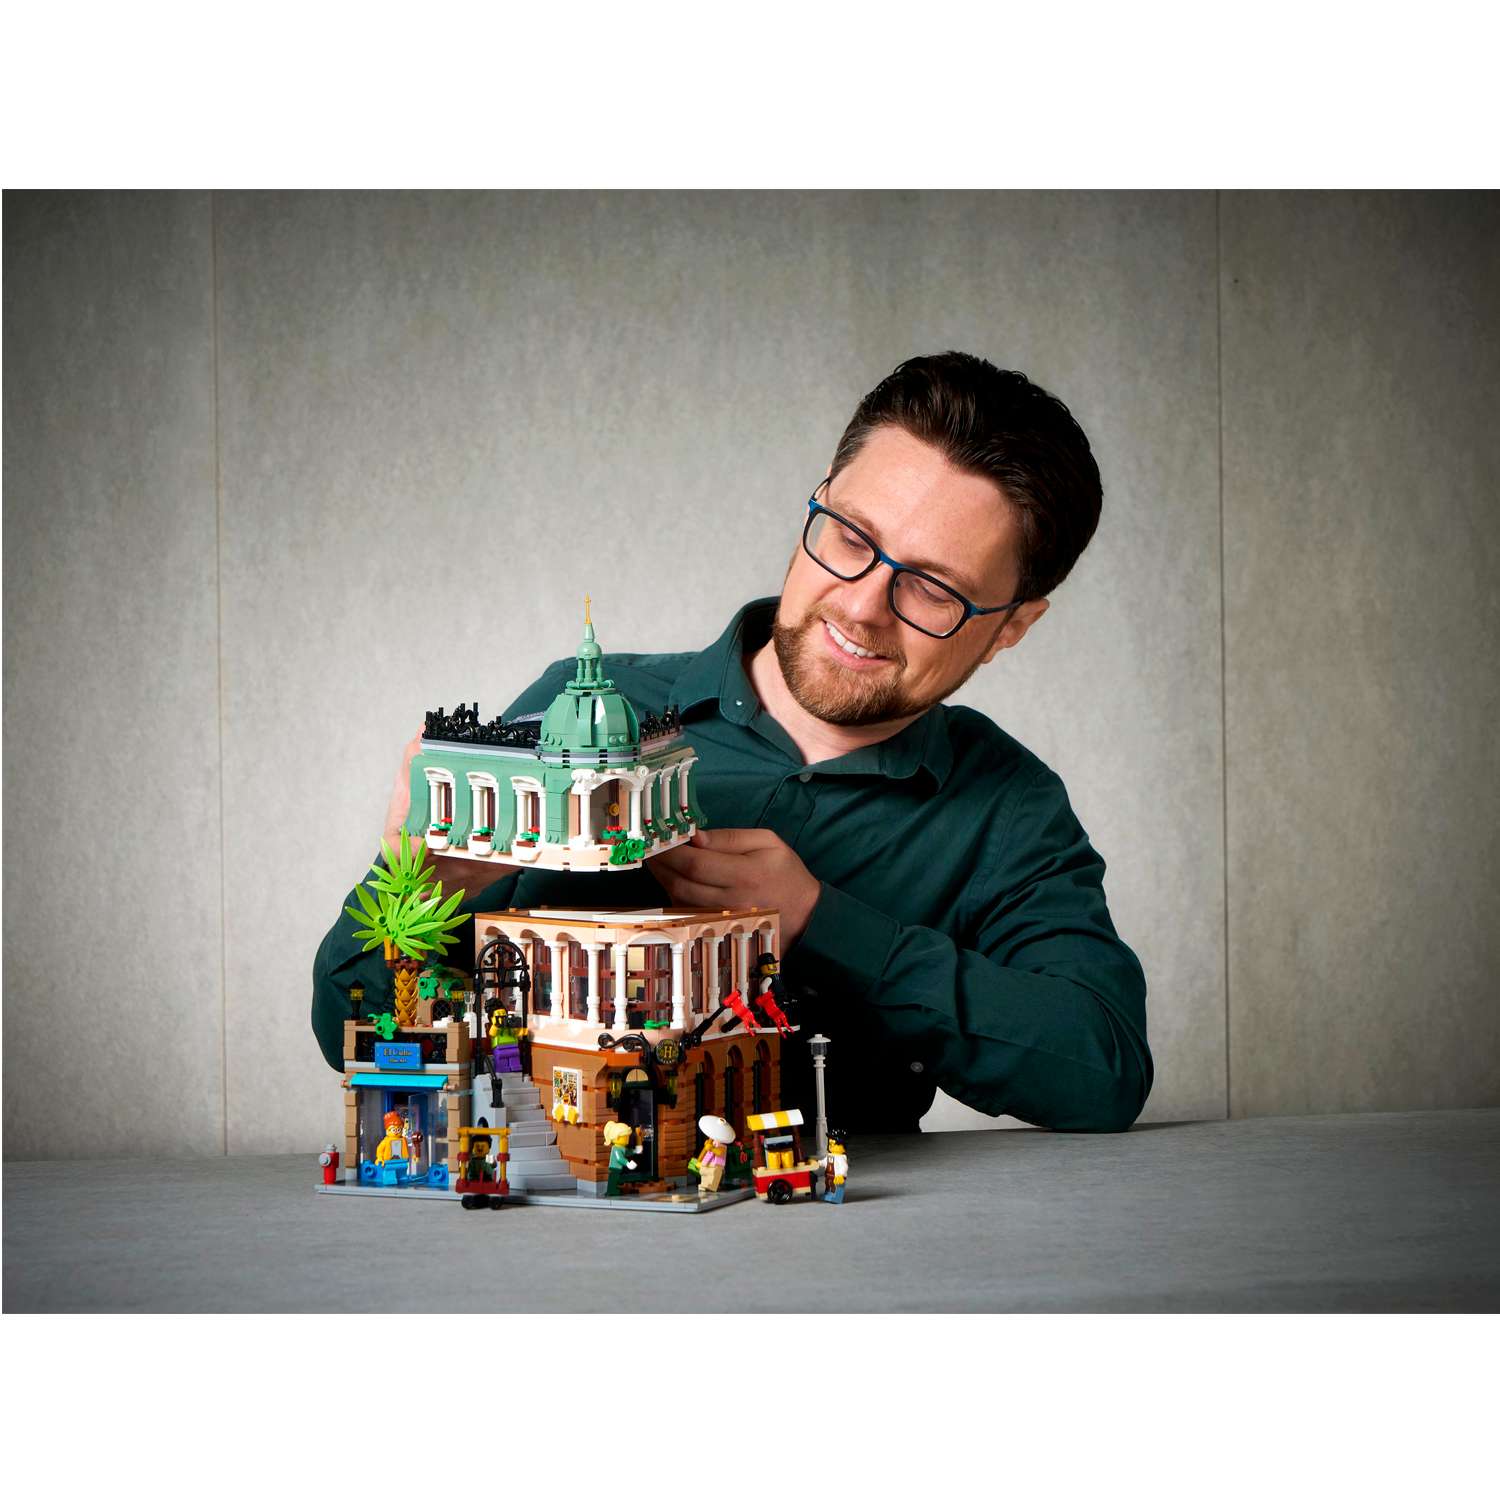 Конструктор детский LEGO Creator Expert Бутик-отель 10297 - фото 12